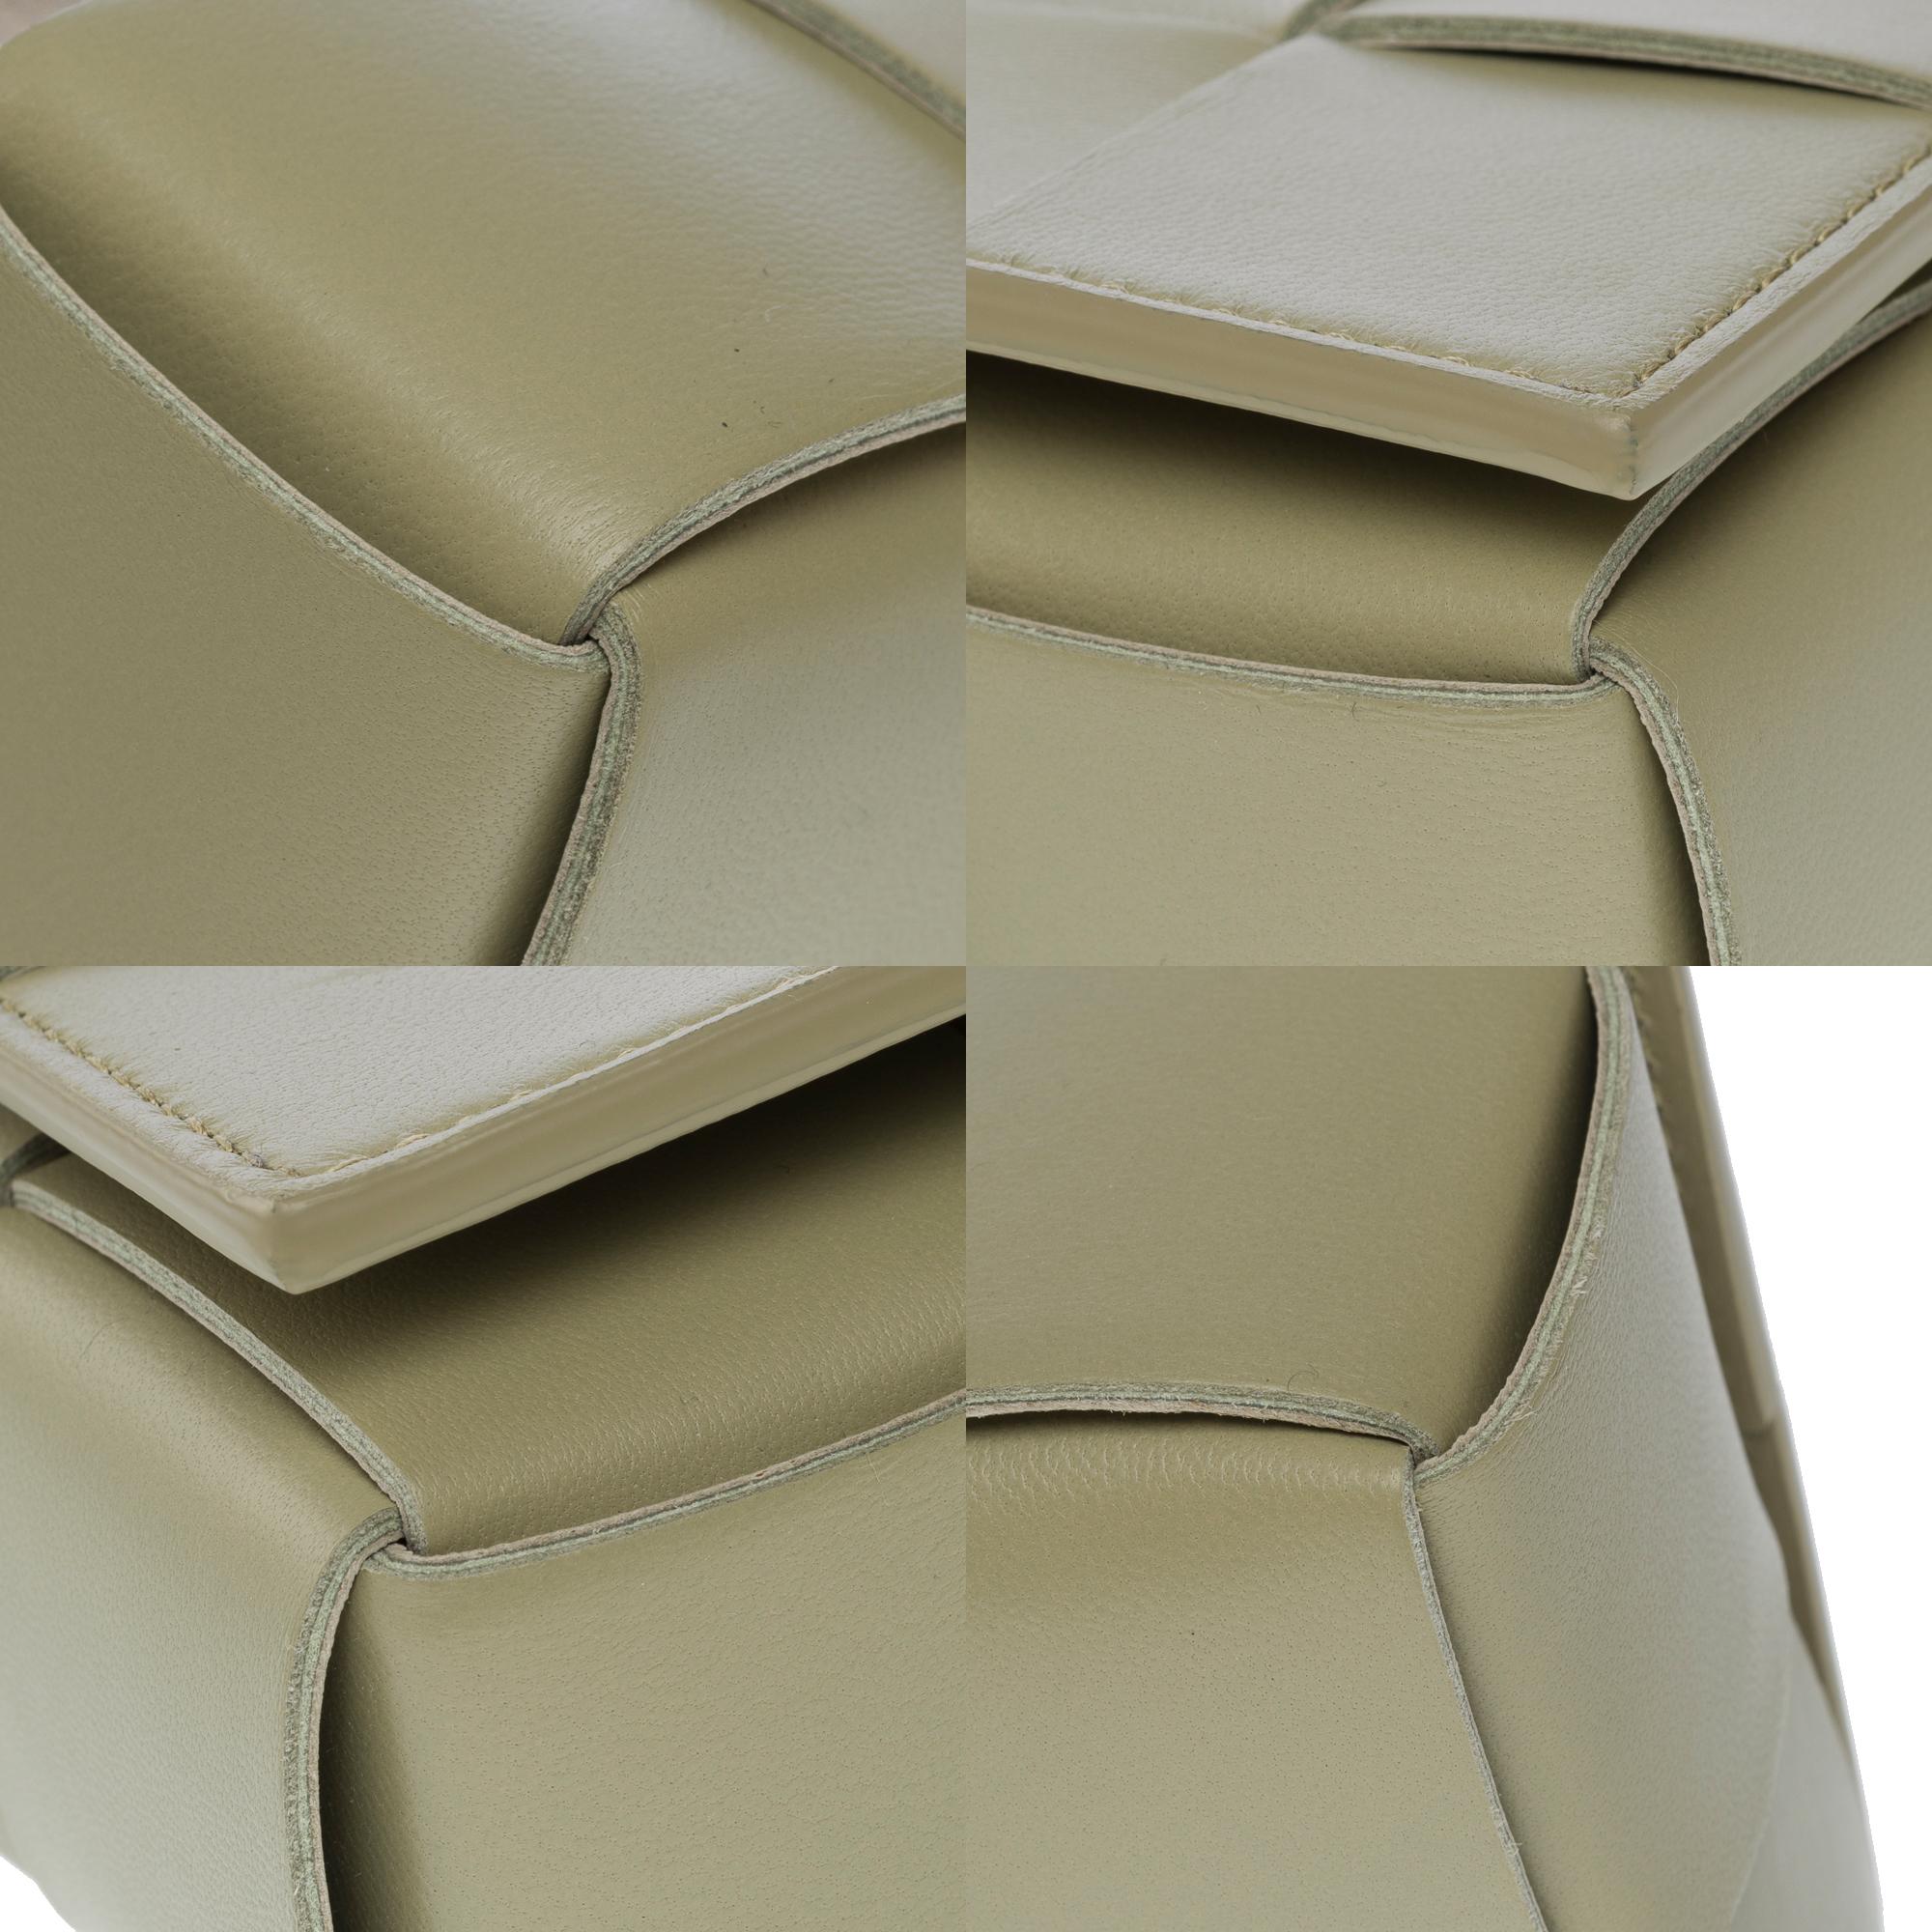 Bottega Veneta Cassette 23 shoulder bag in green lambskin leather, GHW For Sale 8